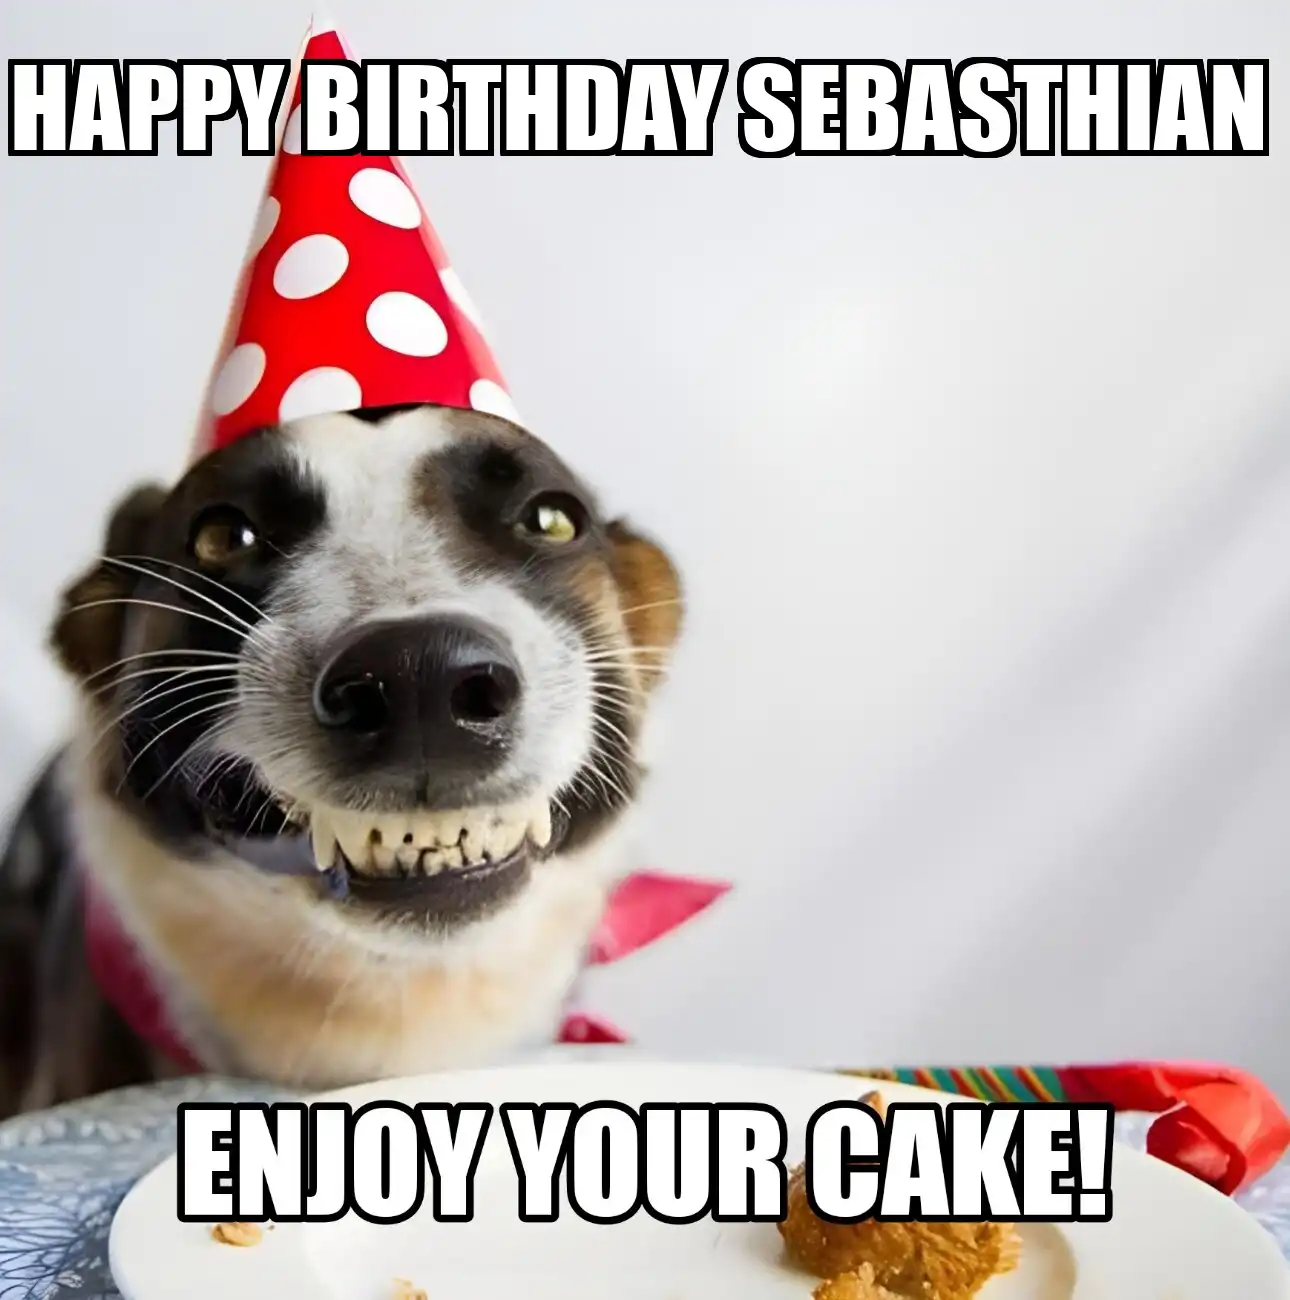 Happy Birthday Sebasthian Enjoy Your Cake Dog Meme